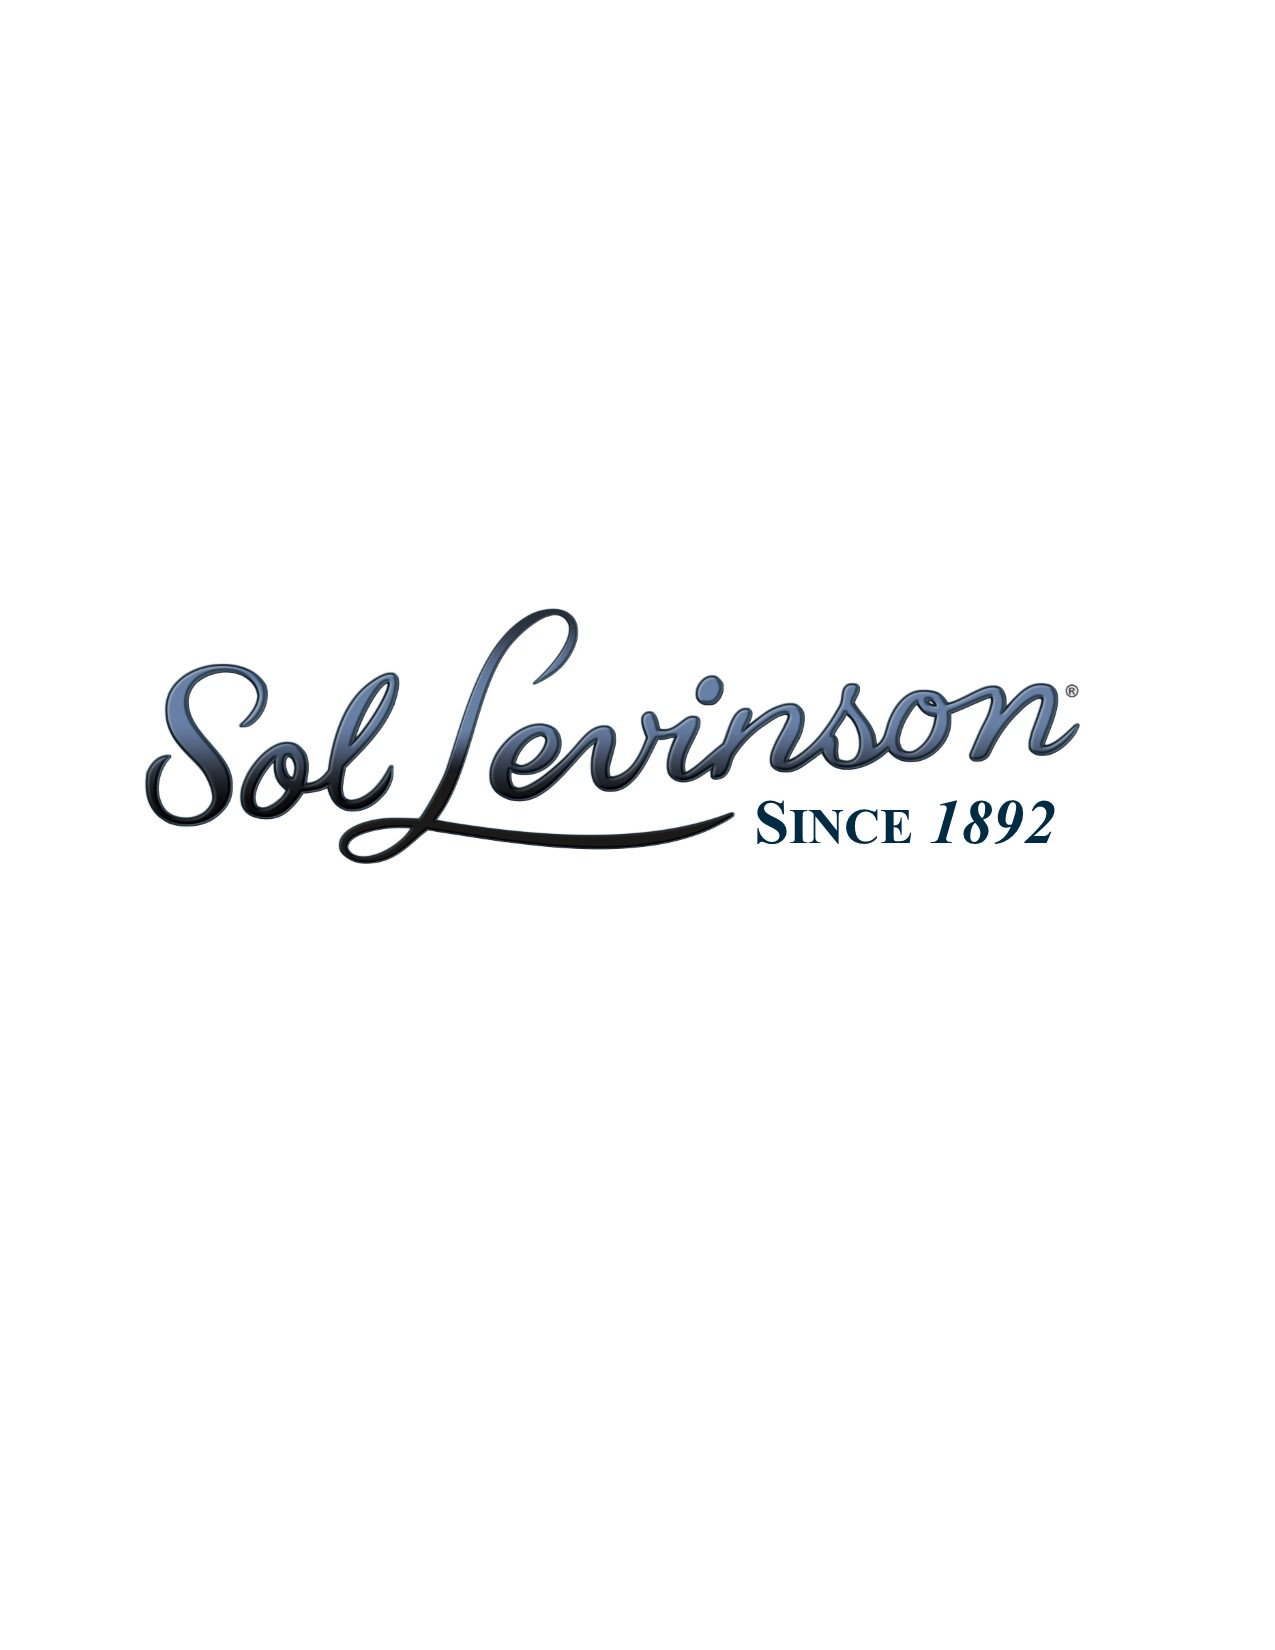 Sol Levinson & Bros. Inc. Company Logo